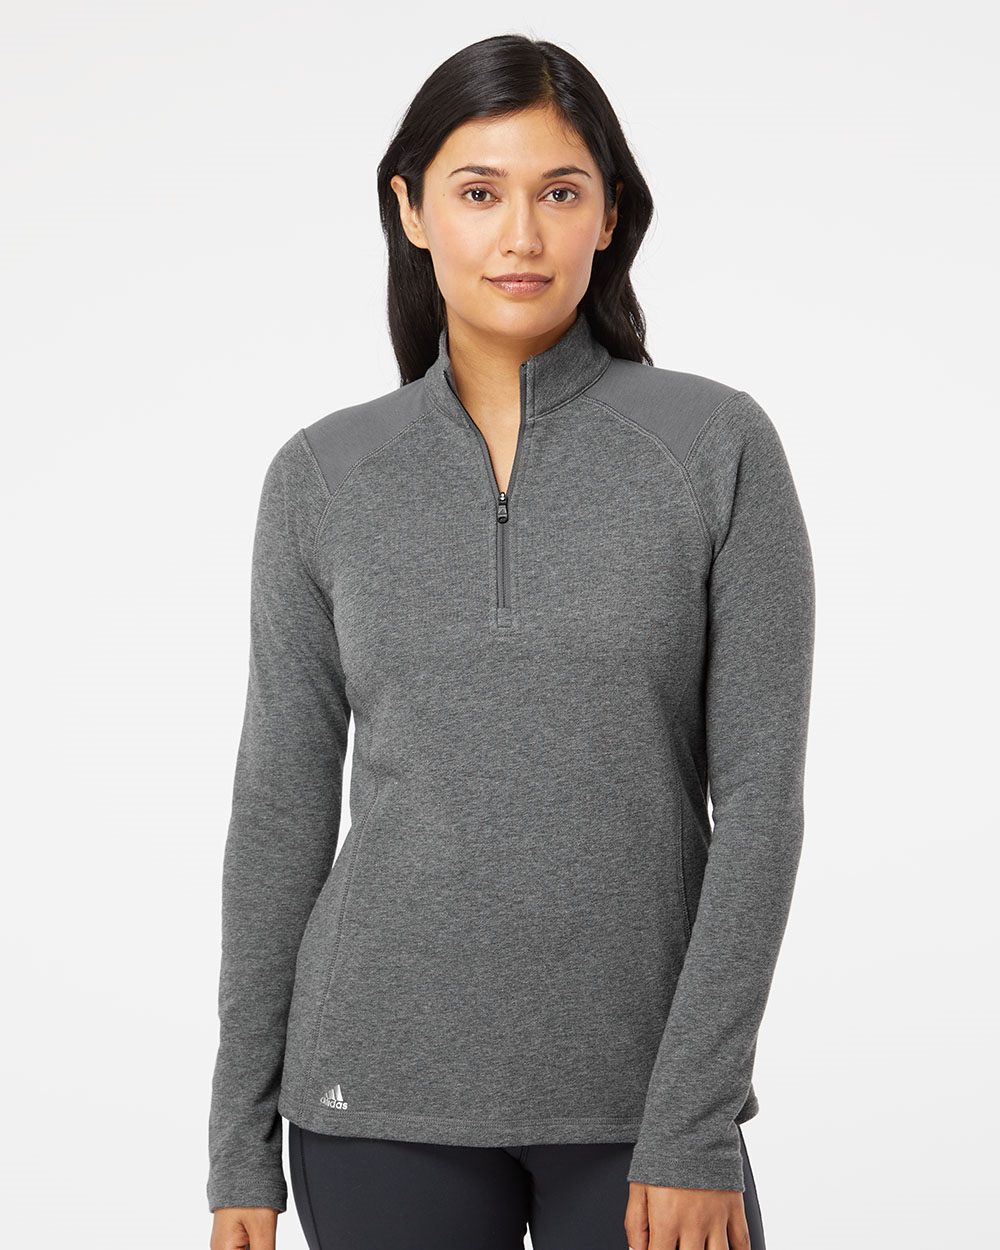 rekken schudden Extractie Adidas A464 - Women's Heathered Quarter-Zip Pullover with Colorblocked  Shoulders